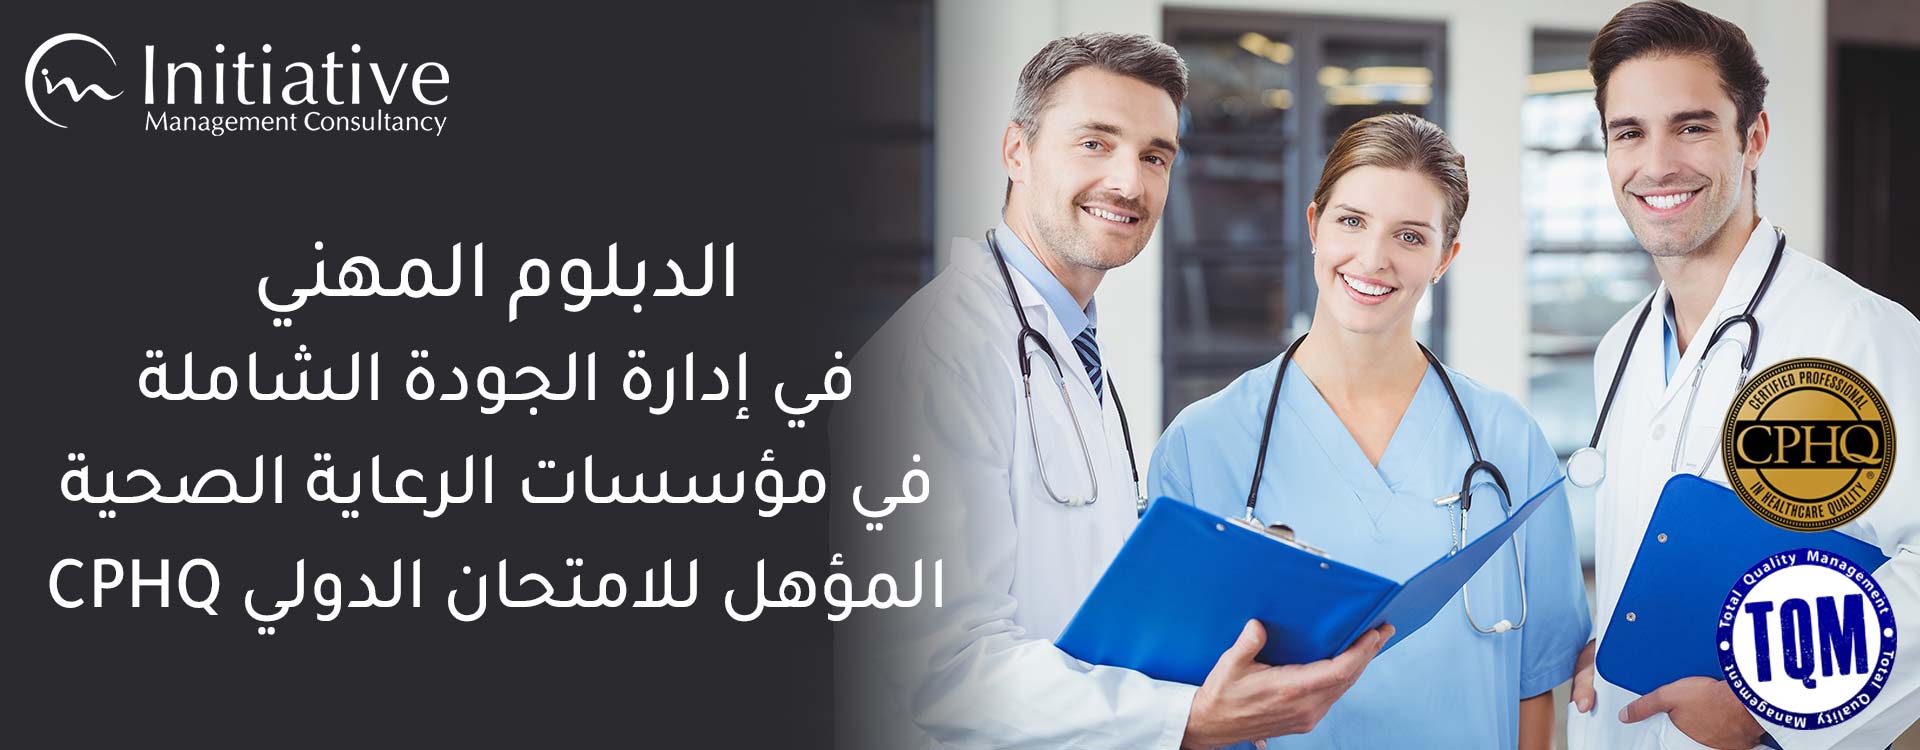 الدبلوم المهني في إدارة الجودة الشاملة في مؤسسات الرعاية الصحية المؤهل للامتحان الدولي CPHQ